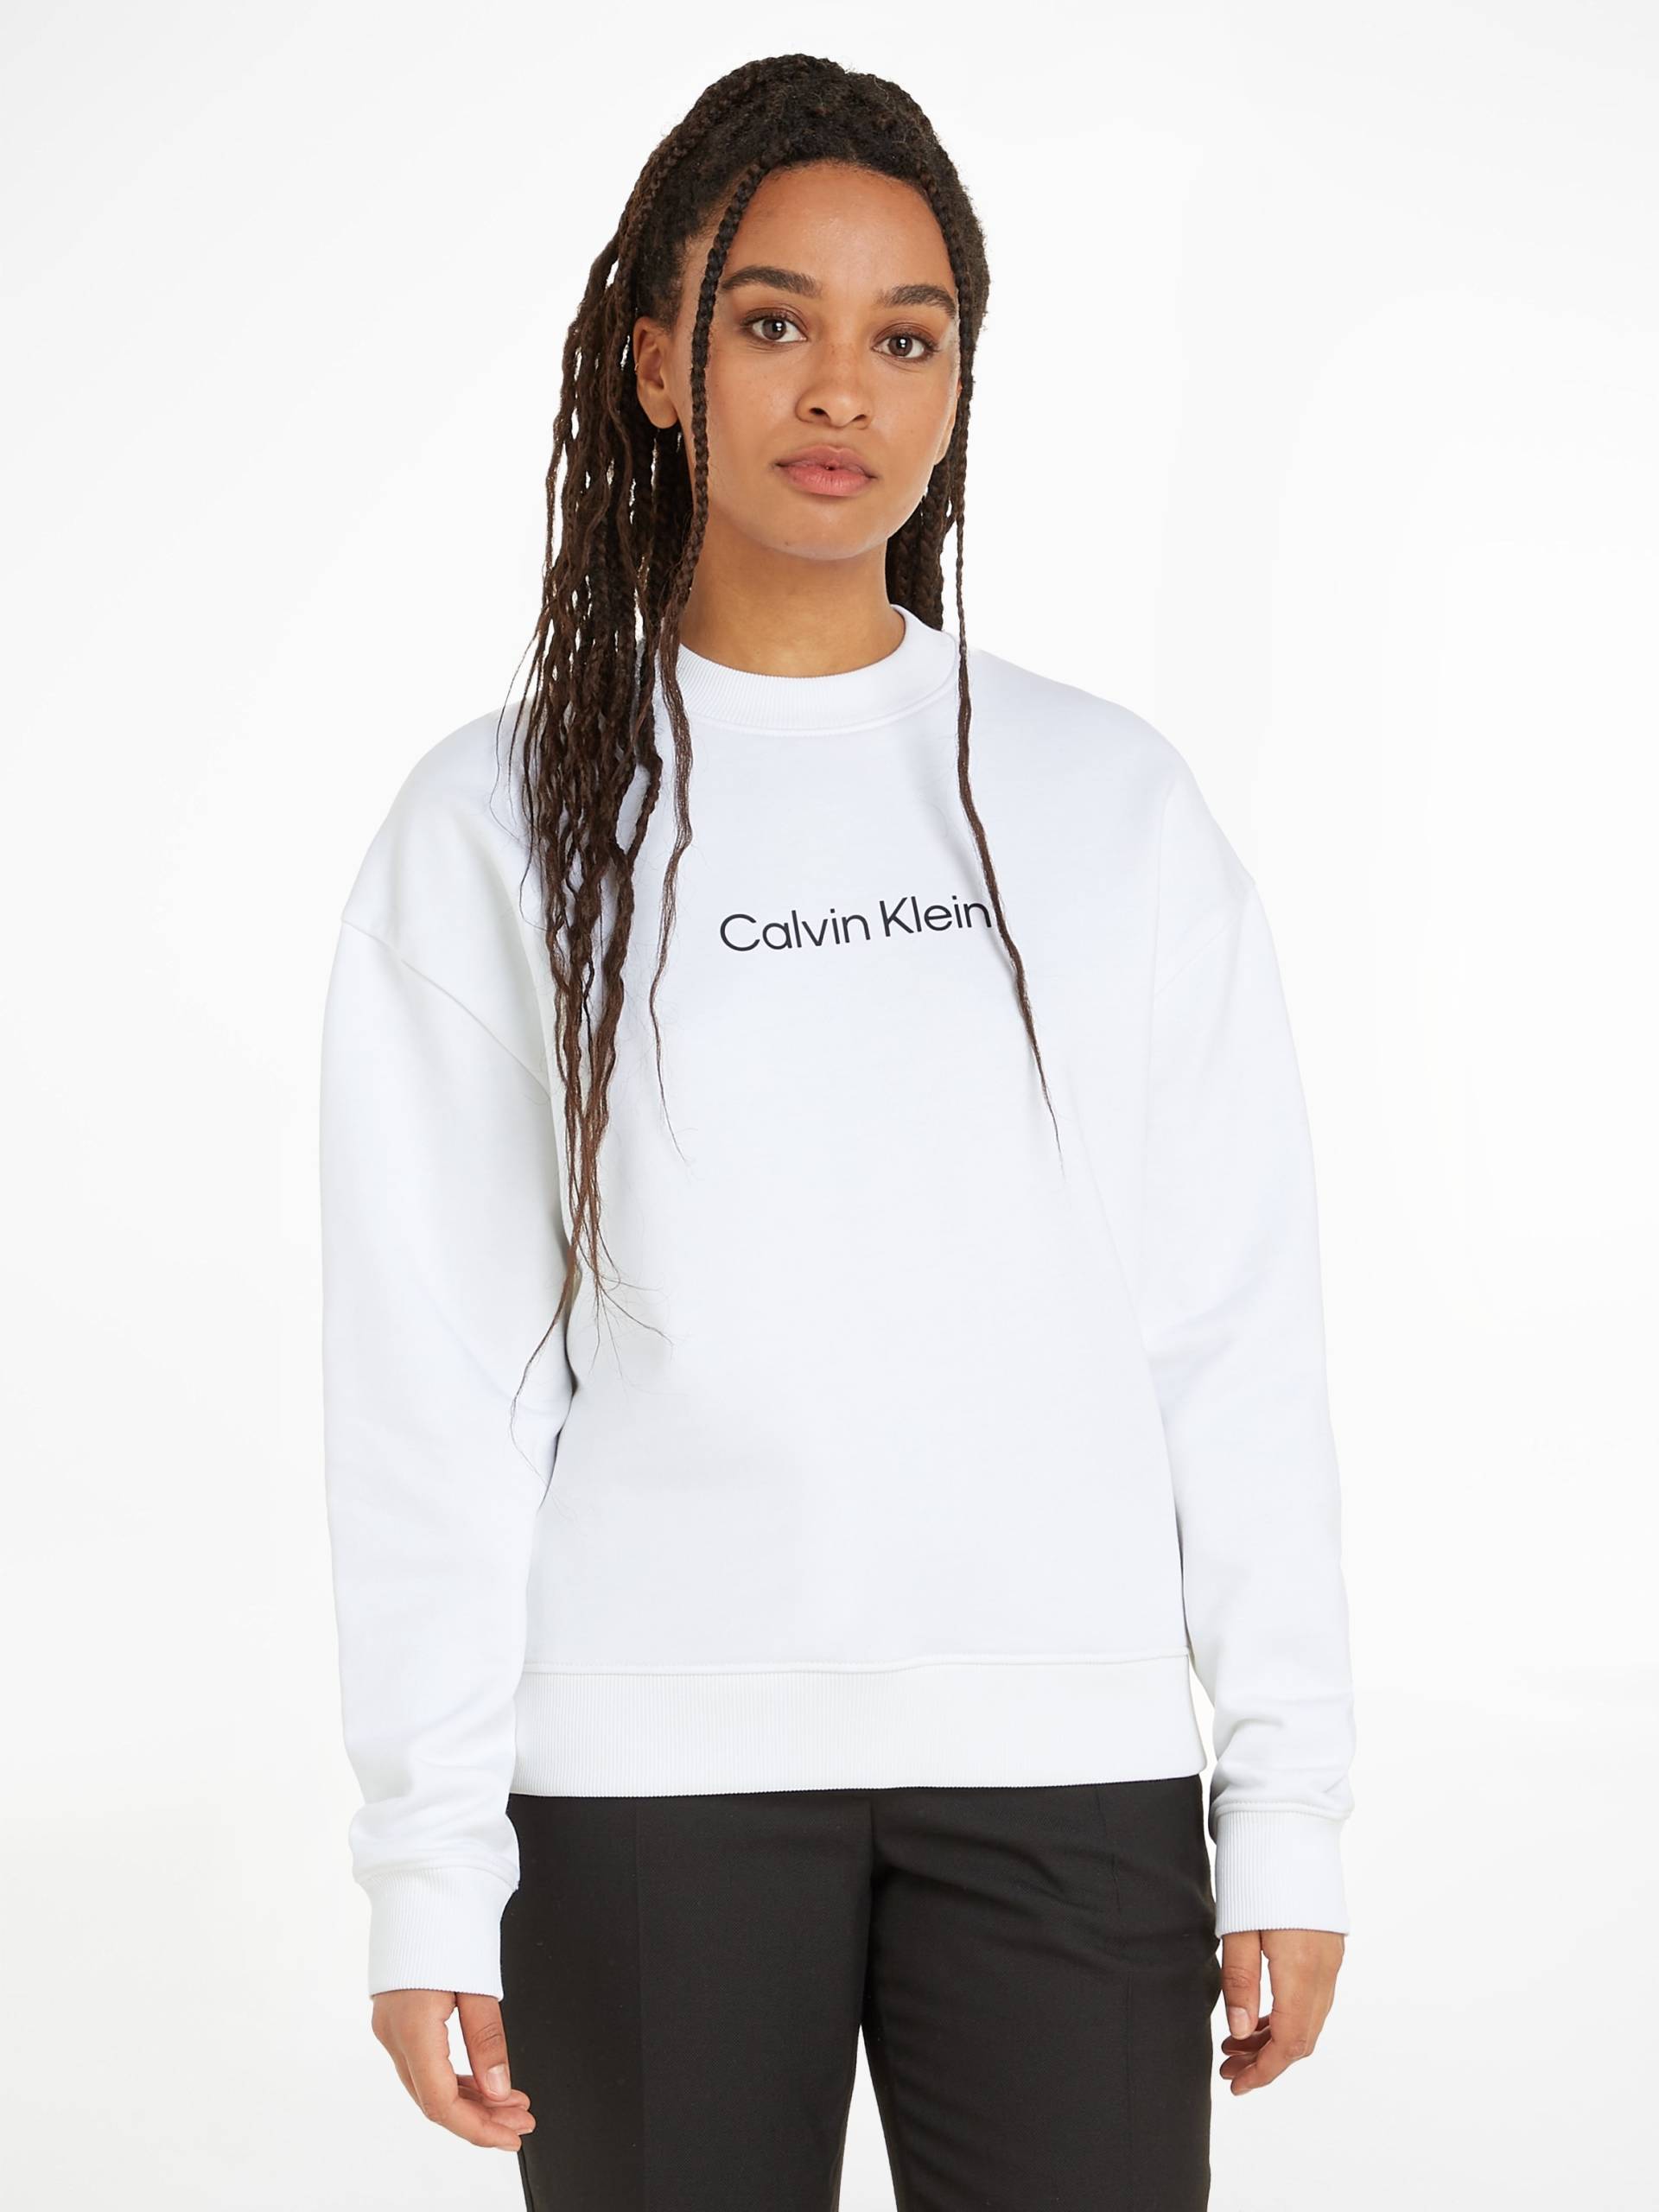 Calvin Klein Sweatshirt »HERO LOGO SWEAT« von Calvin Klein